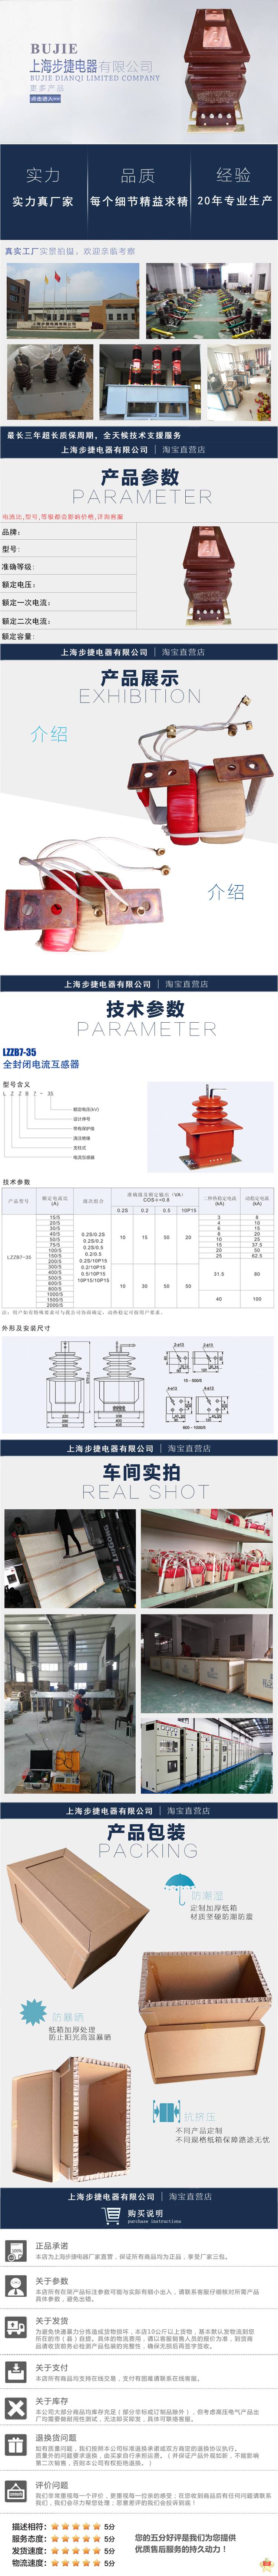 步捷电器 lmzj1-0.66 低压电流互感器LMZJ1-0.66 LMZJ1-0.66,LMZ-0.5,LMZJ1-0.5,低压电流互感器